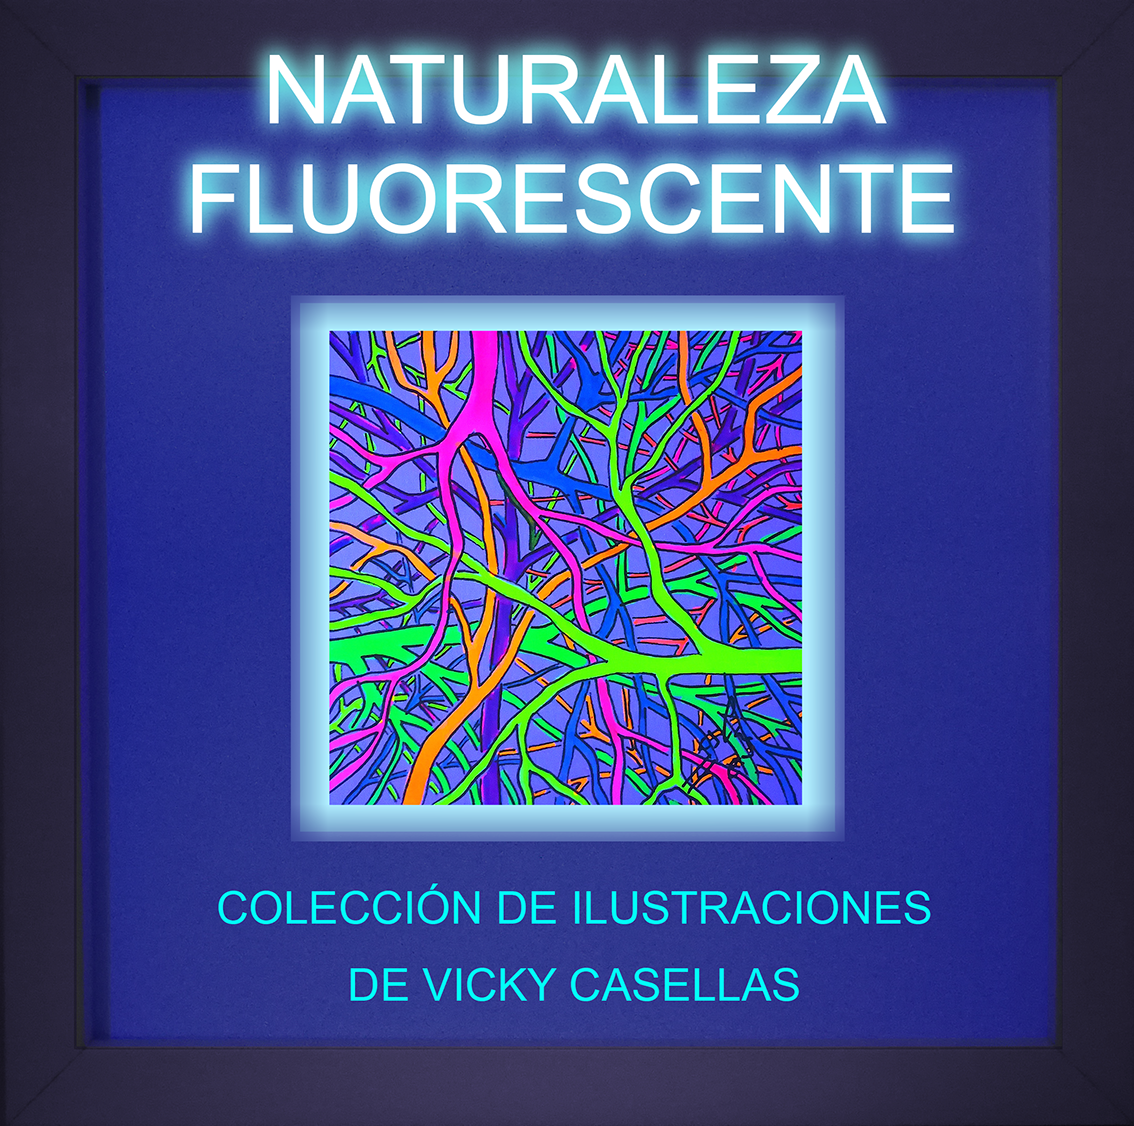 Naturaleza-fluorescente.-Ilustraciones-fluorescentes-Vicky-Casellas